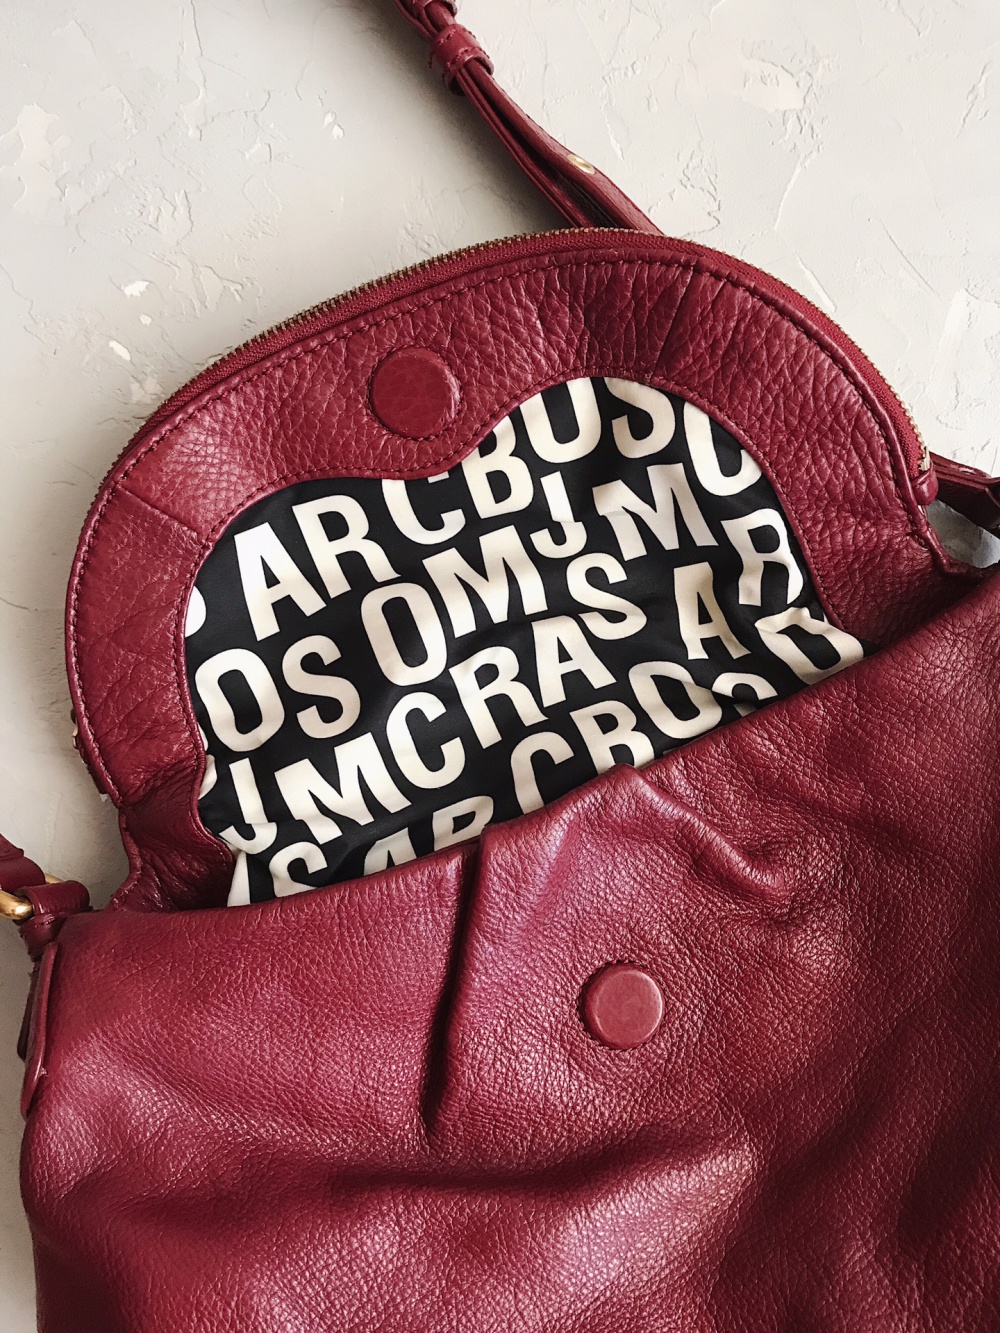 Женская кожаная сумка Marc By Marc Jacobs вкусного цвета Кьянти